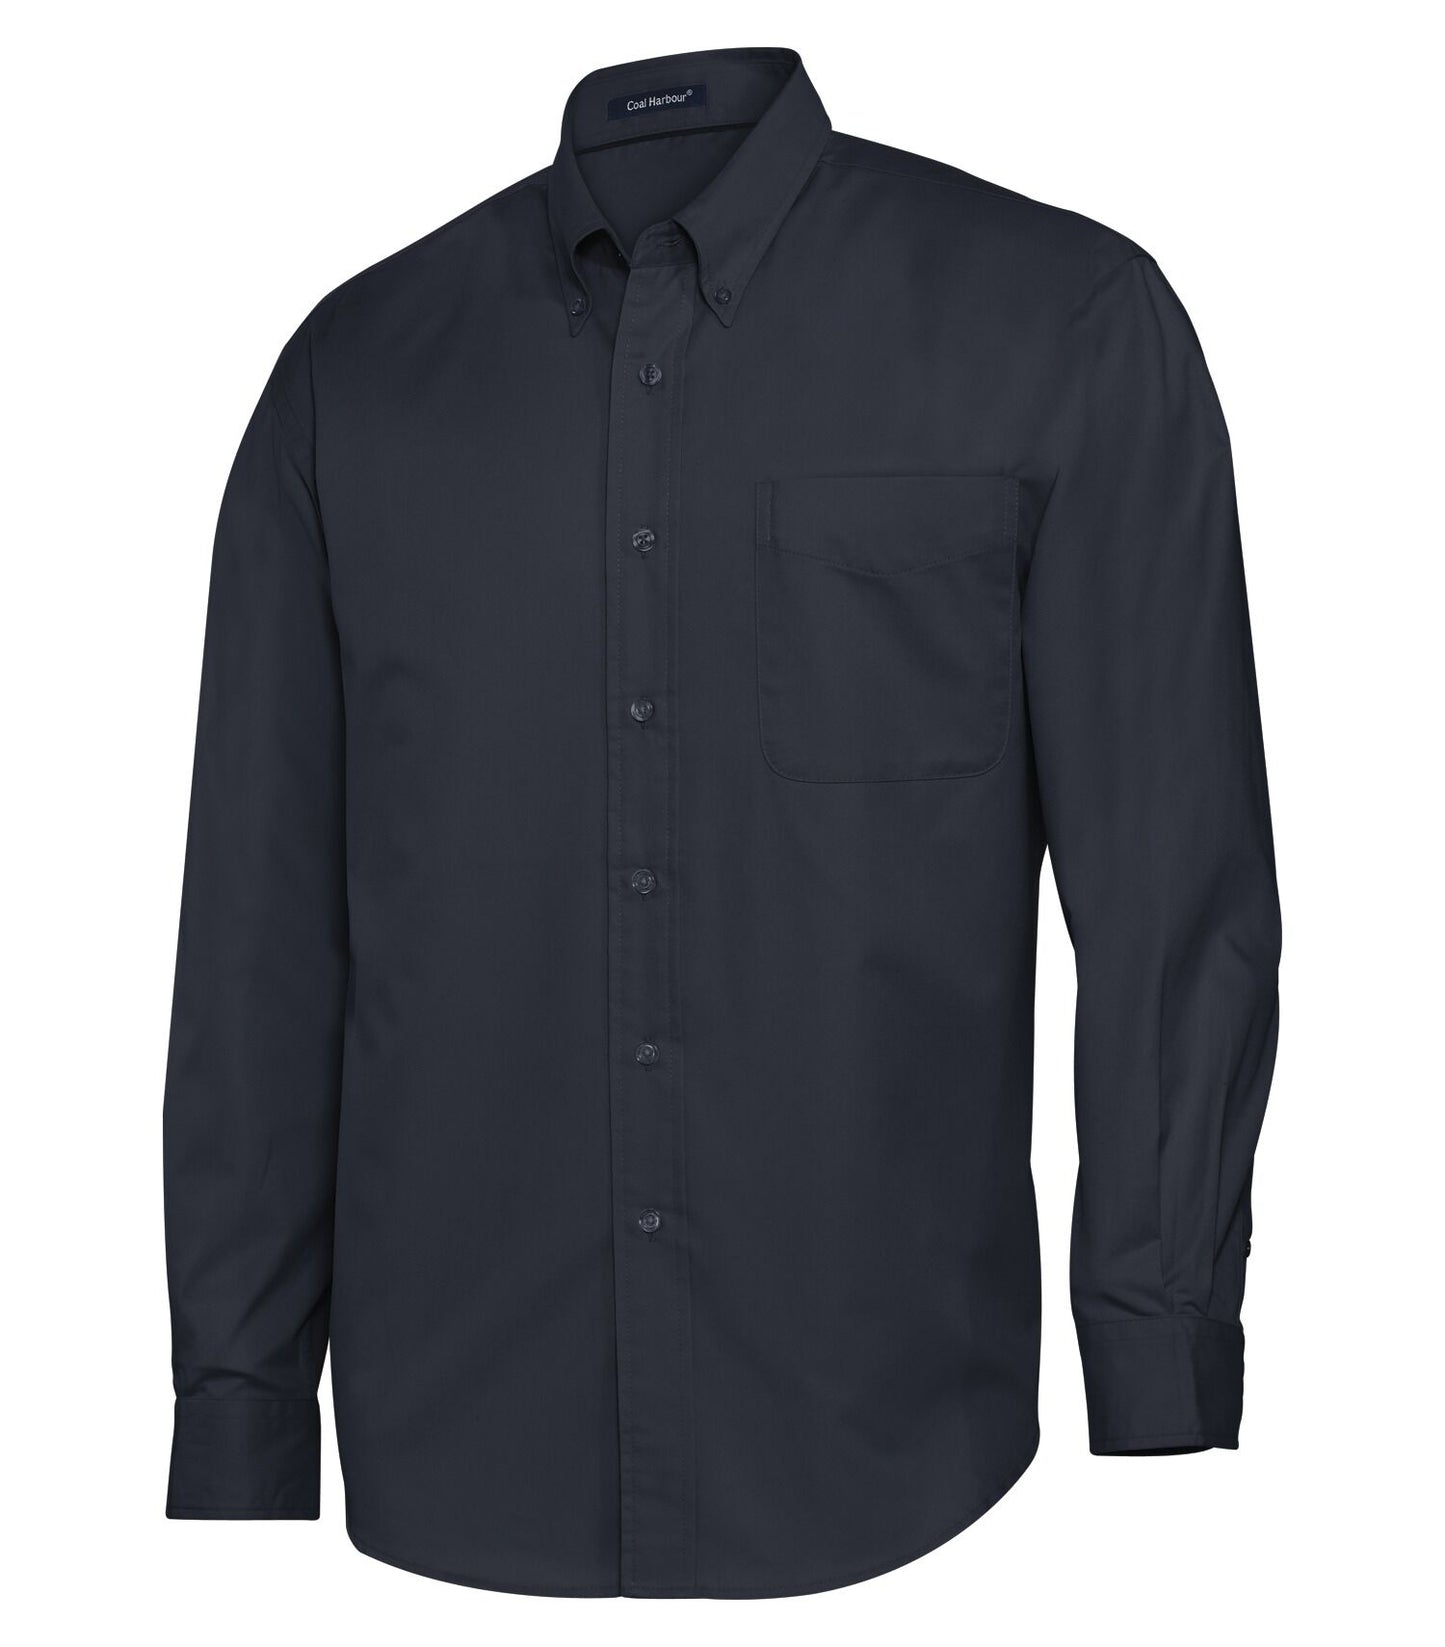 Kohle Harbour-D610 langarmes Hemd-Hemd Easy Care-Mischung für Männer